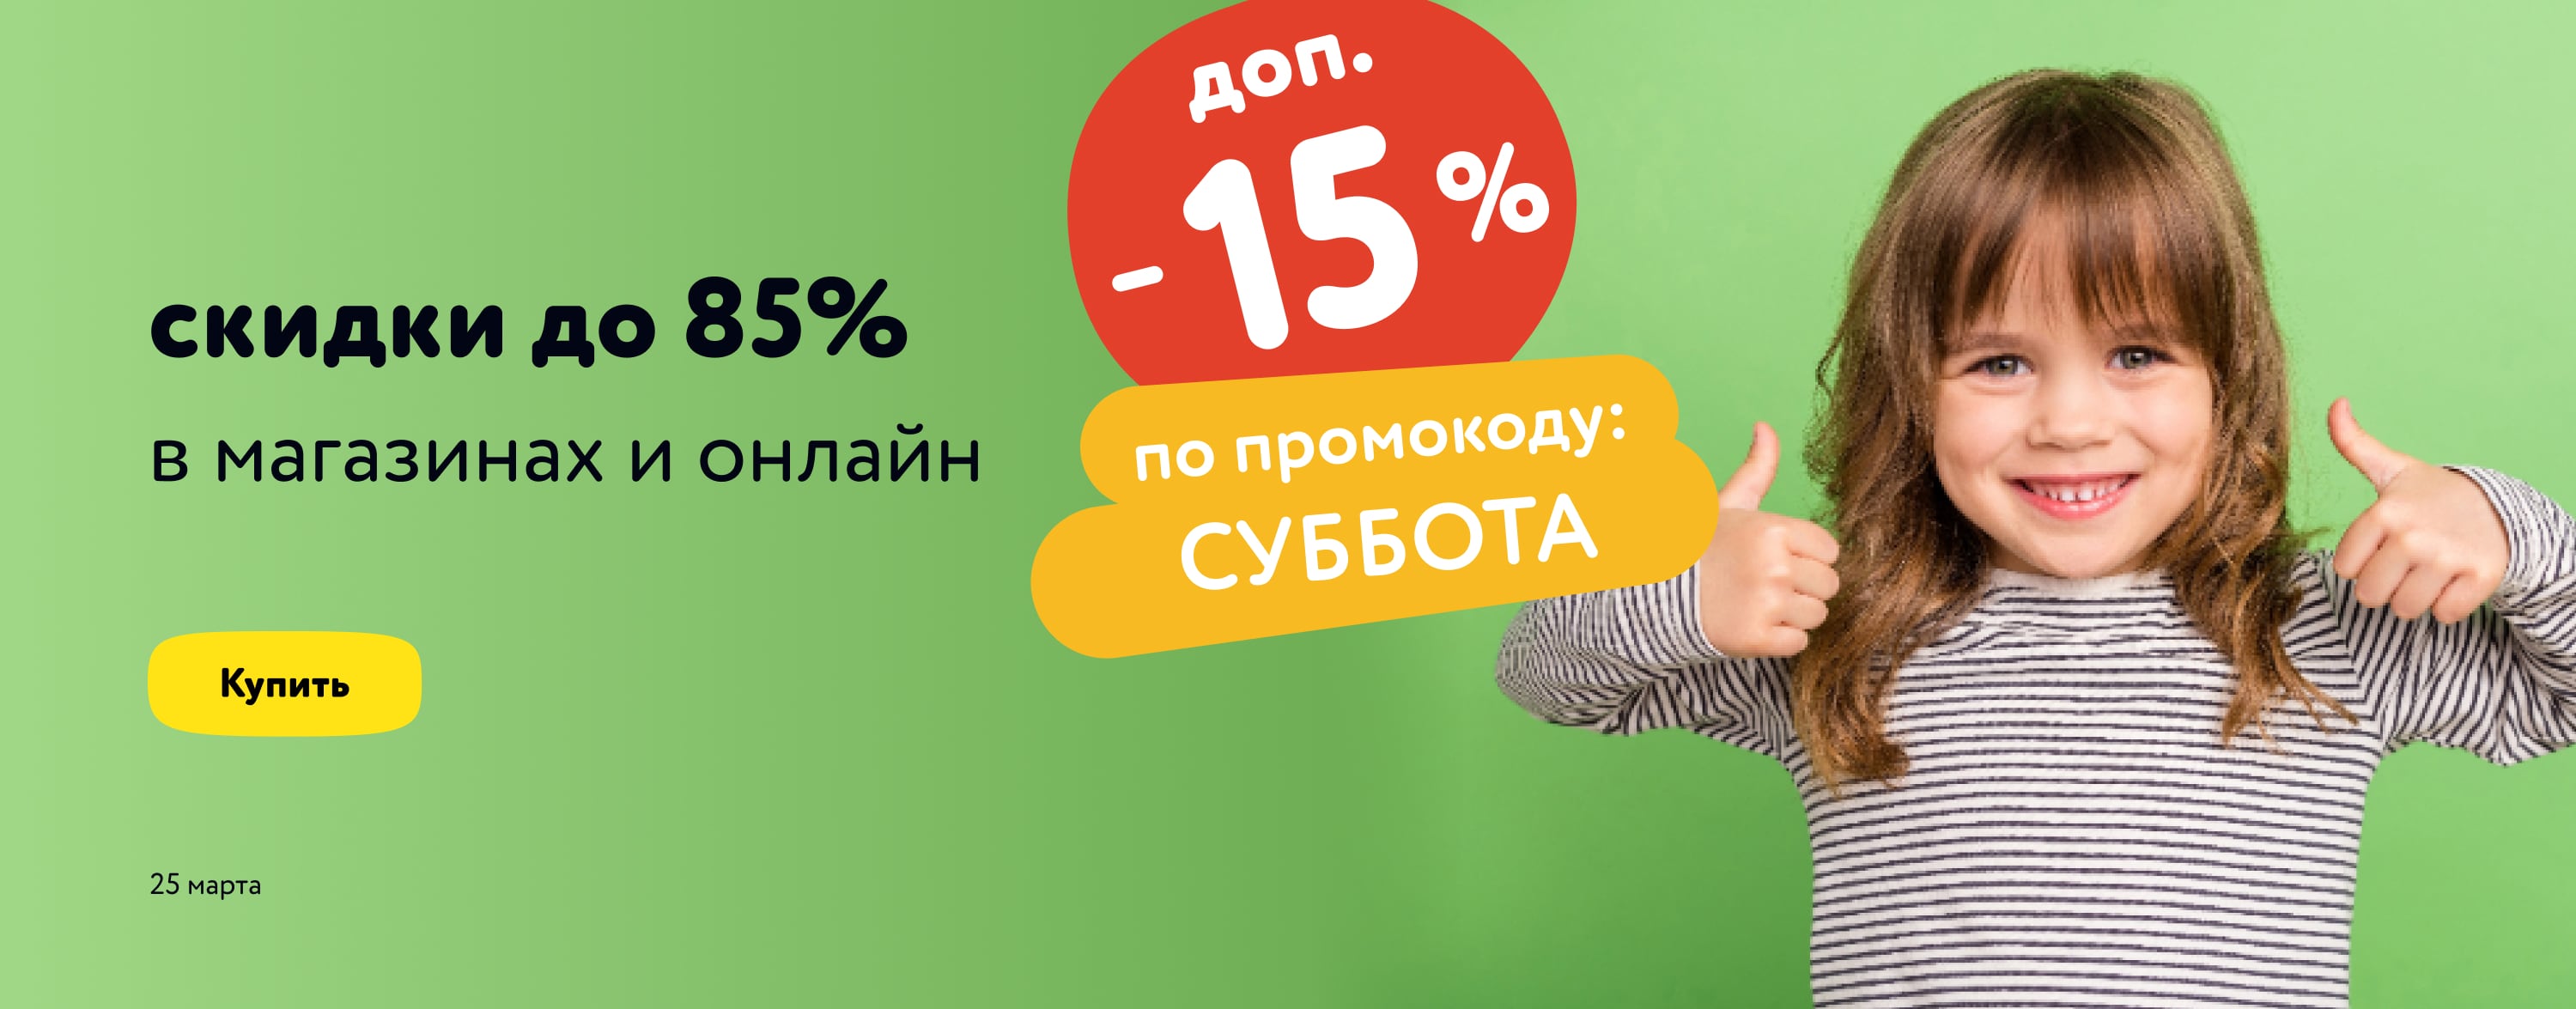 МП Доп. скидка 15% по промокоду на широкий ассортимент товаров СУББОТА 